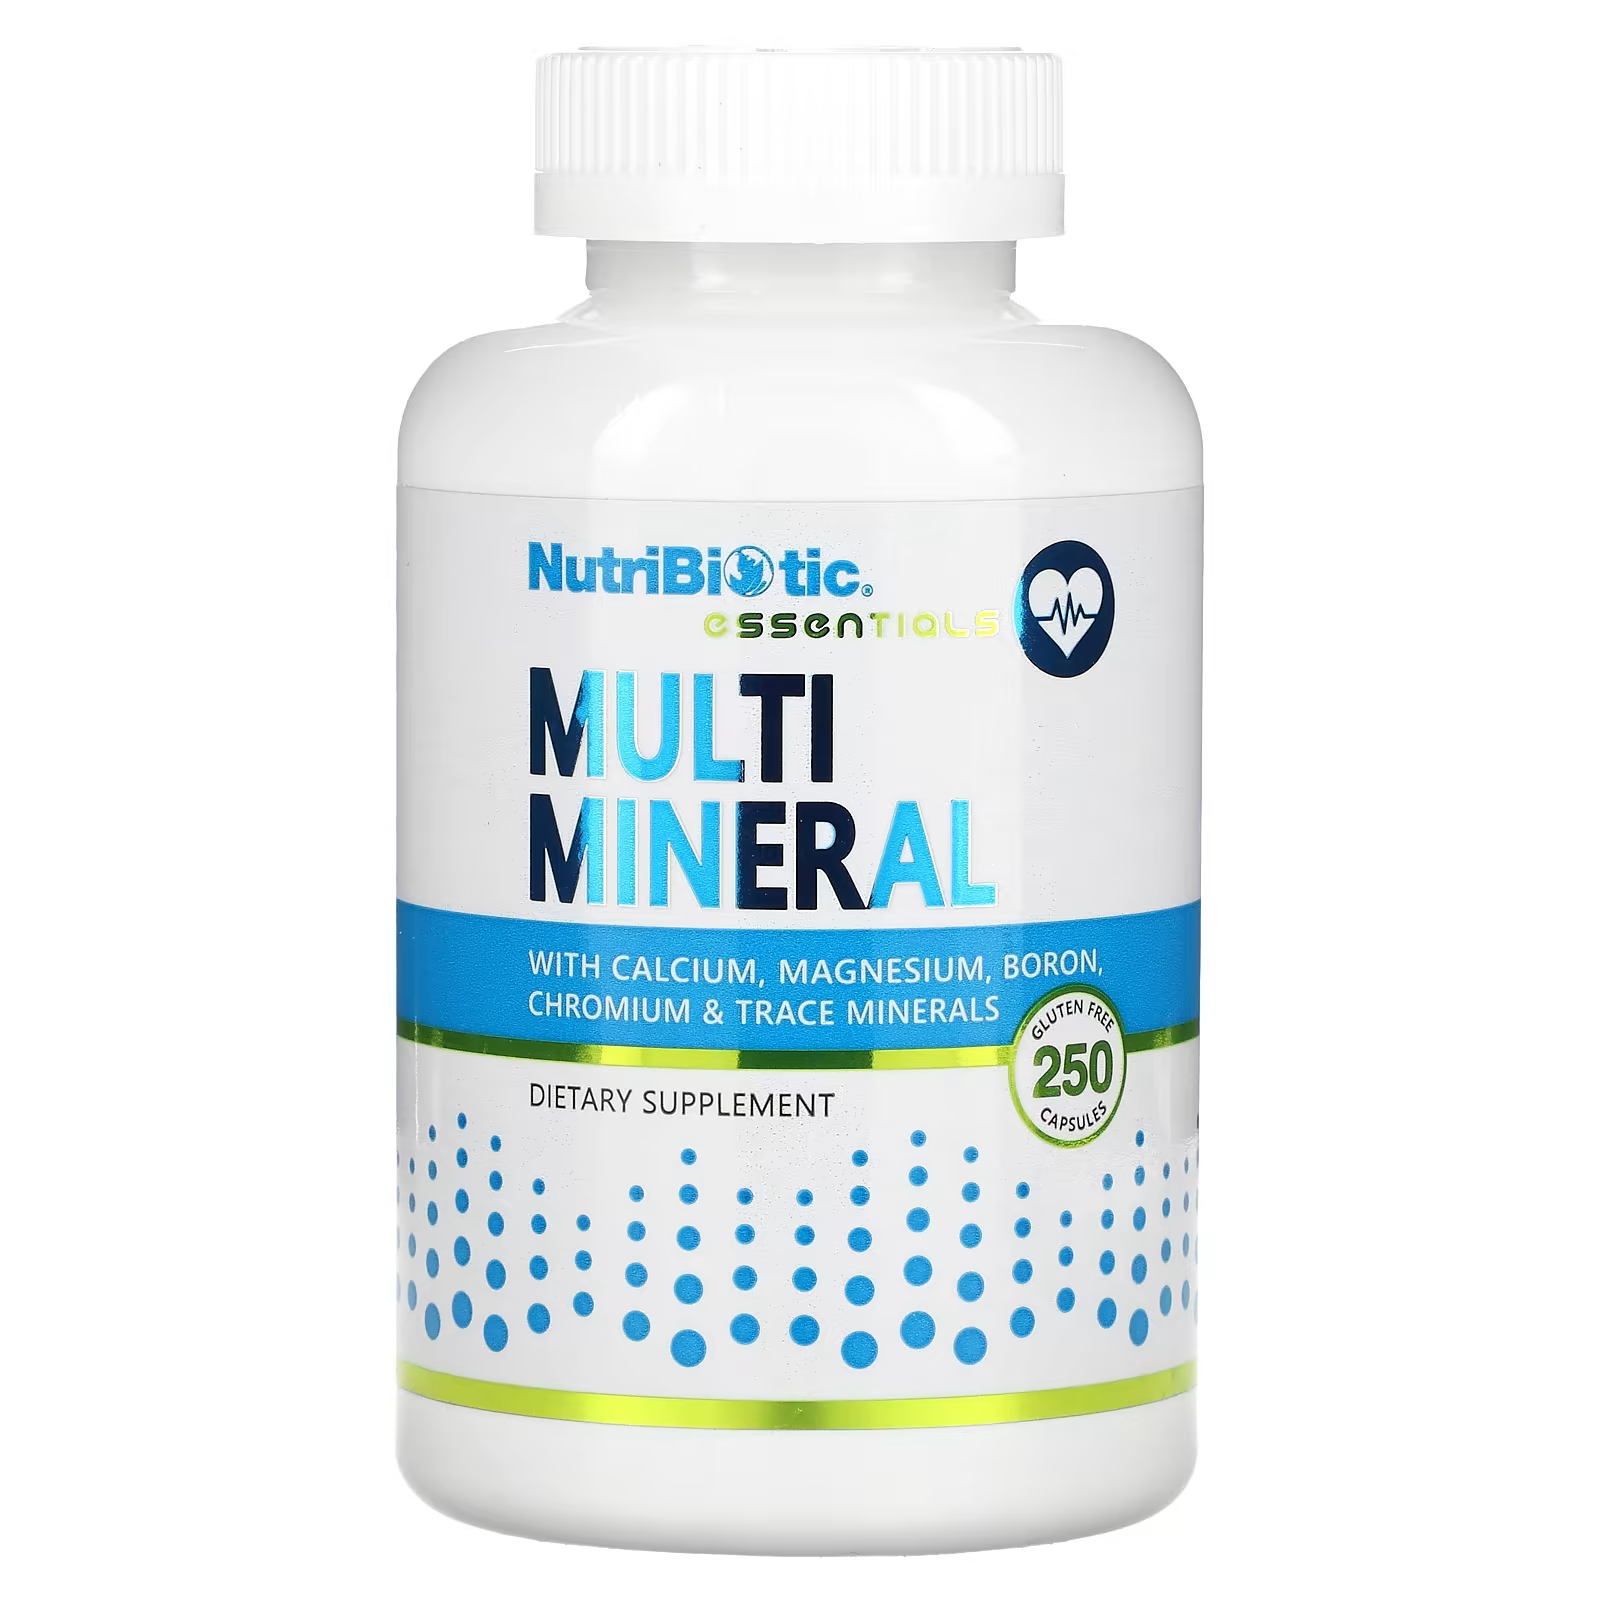 Пищевая добавка NutriBiotic Essentials Multi Mineral, 250 капсул цена и фото